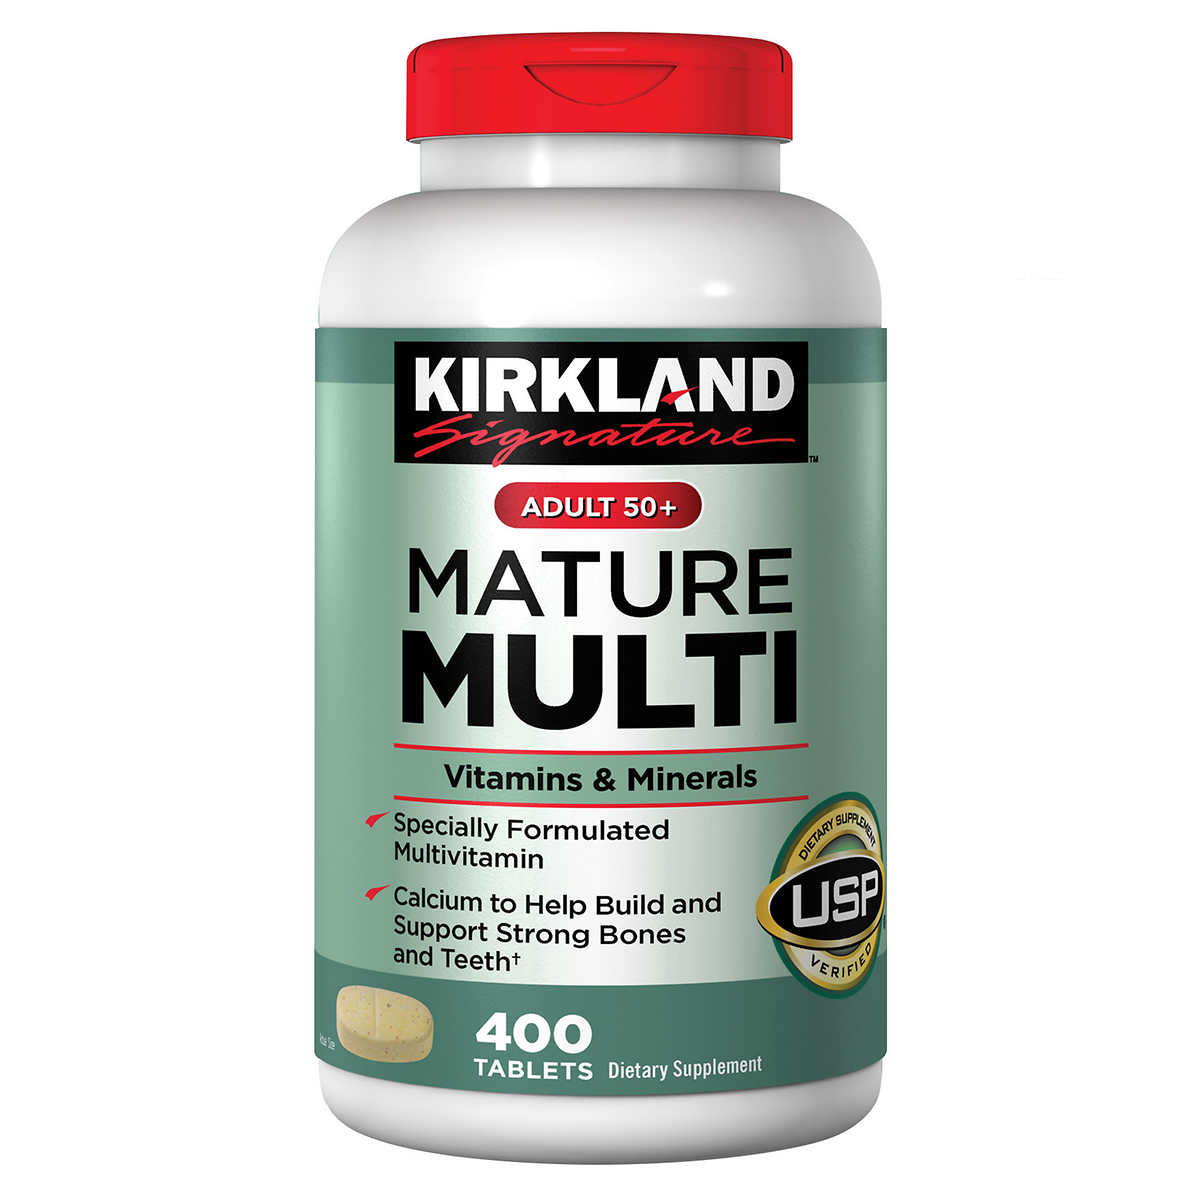 Kirkland Signature Adult 50 Mature Multi Vitamins And Minerals 400